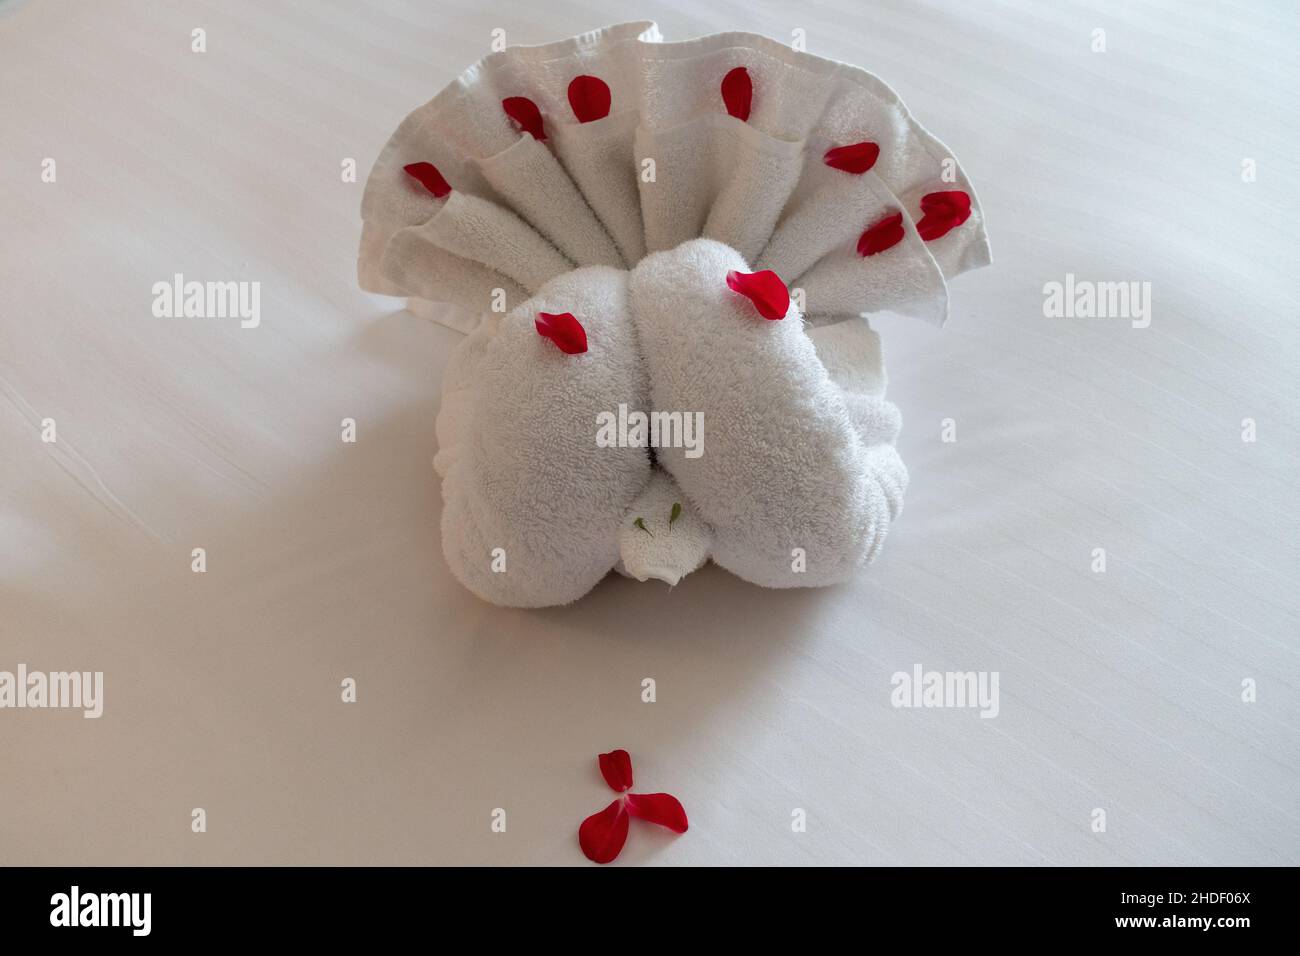 Arte de toallas que representa un pavo real hecho creativamente por el personal de limpieza de un hotel de cinco estrellas. Toallas de hotel. Foto de stock